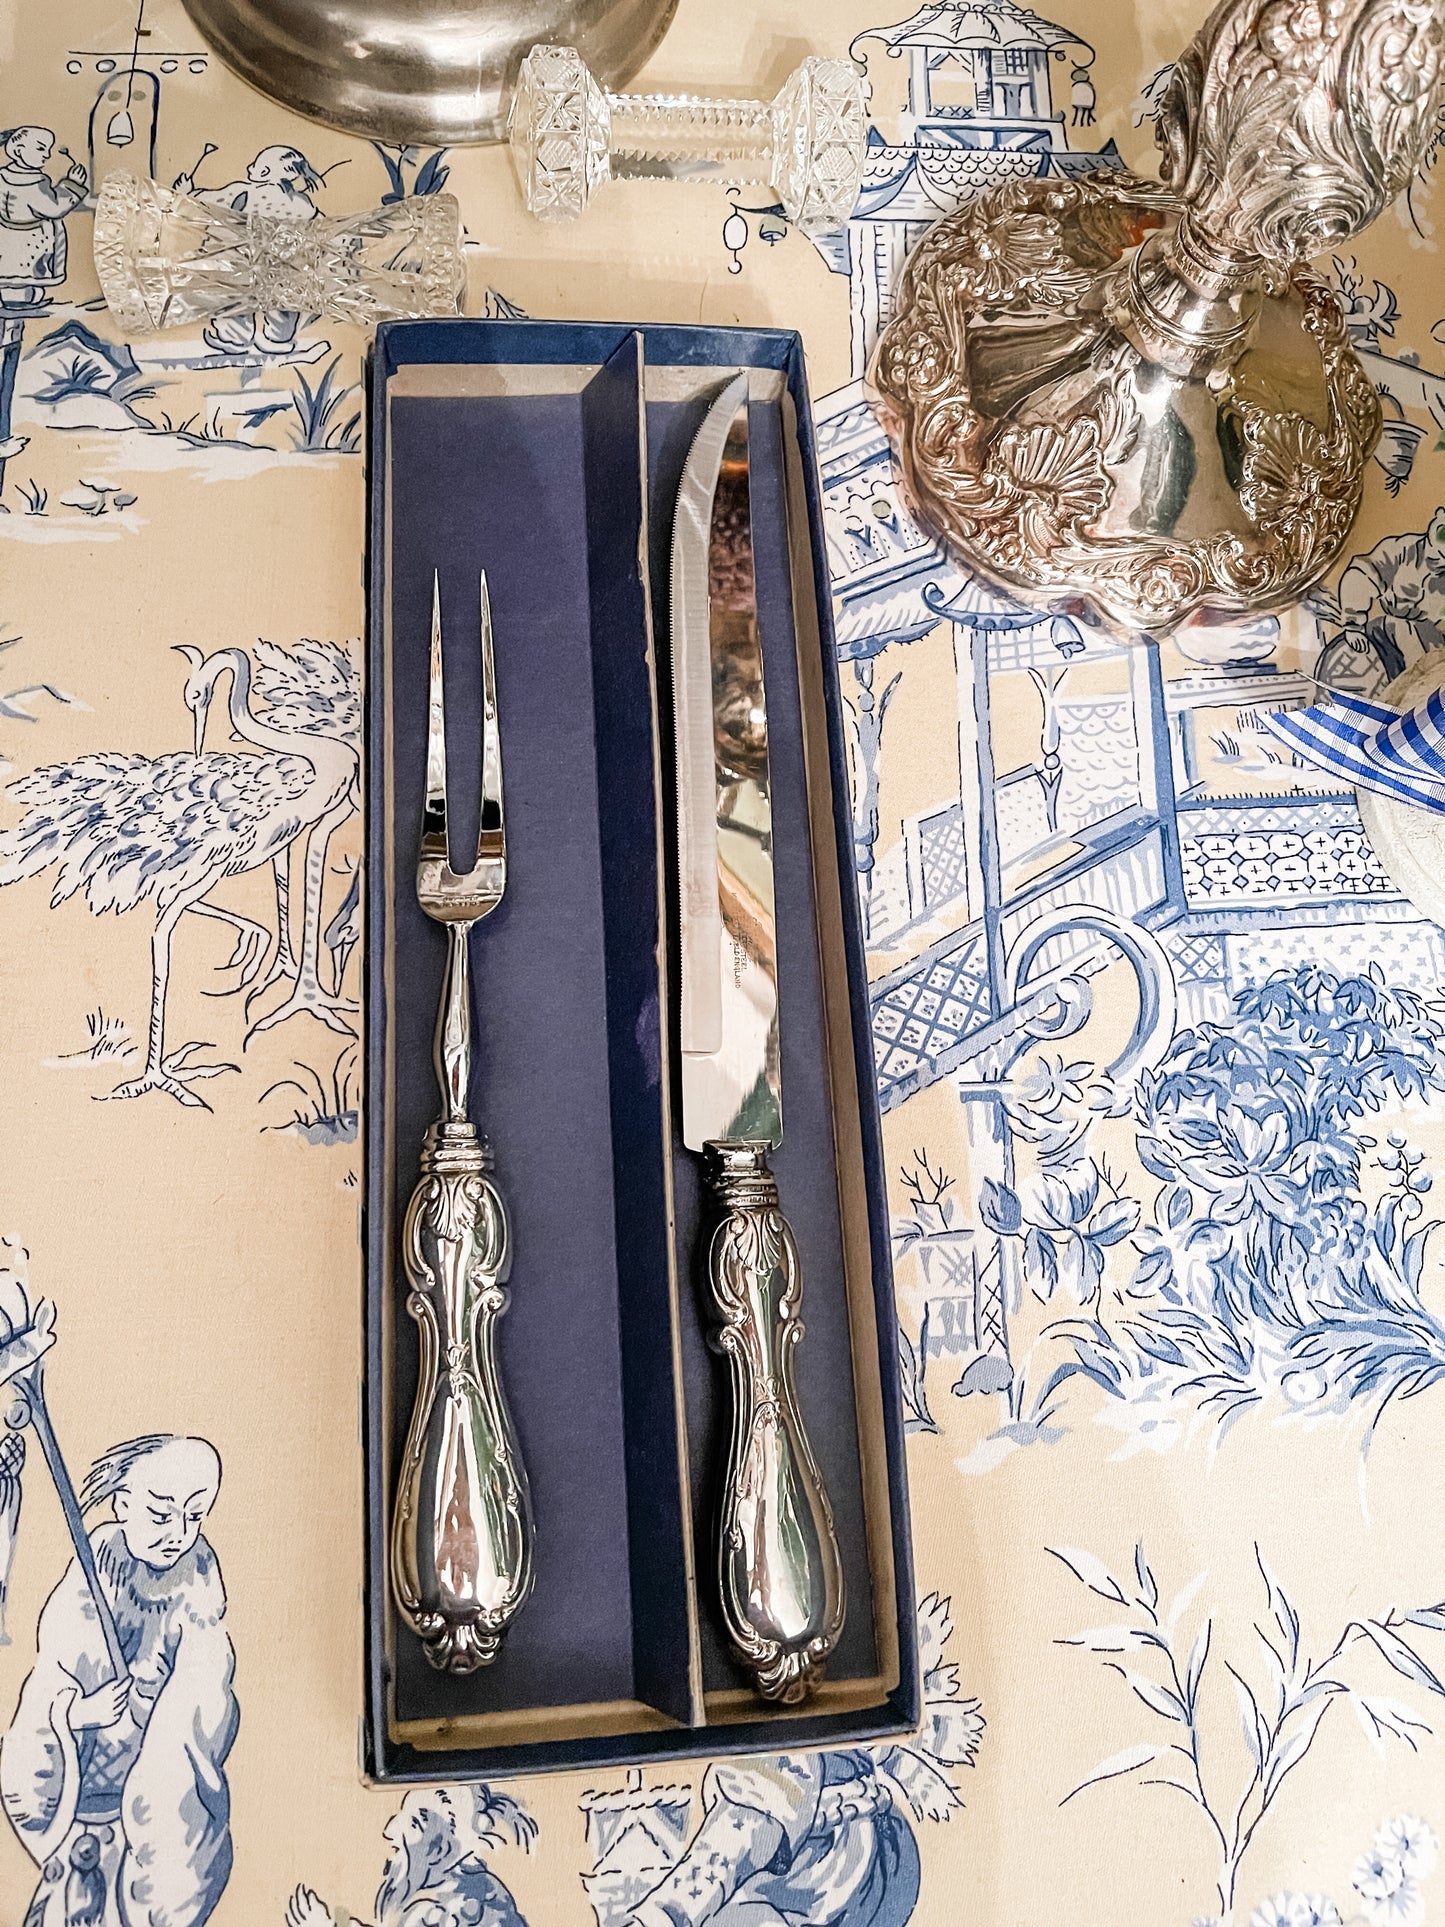 Vintage Sterling Carving Fork and Knife Set, Sheffield, England